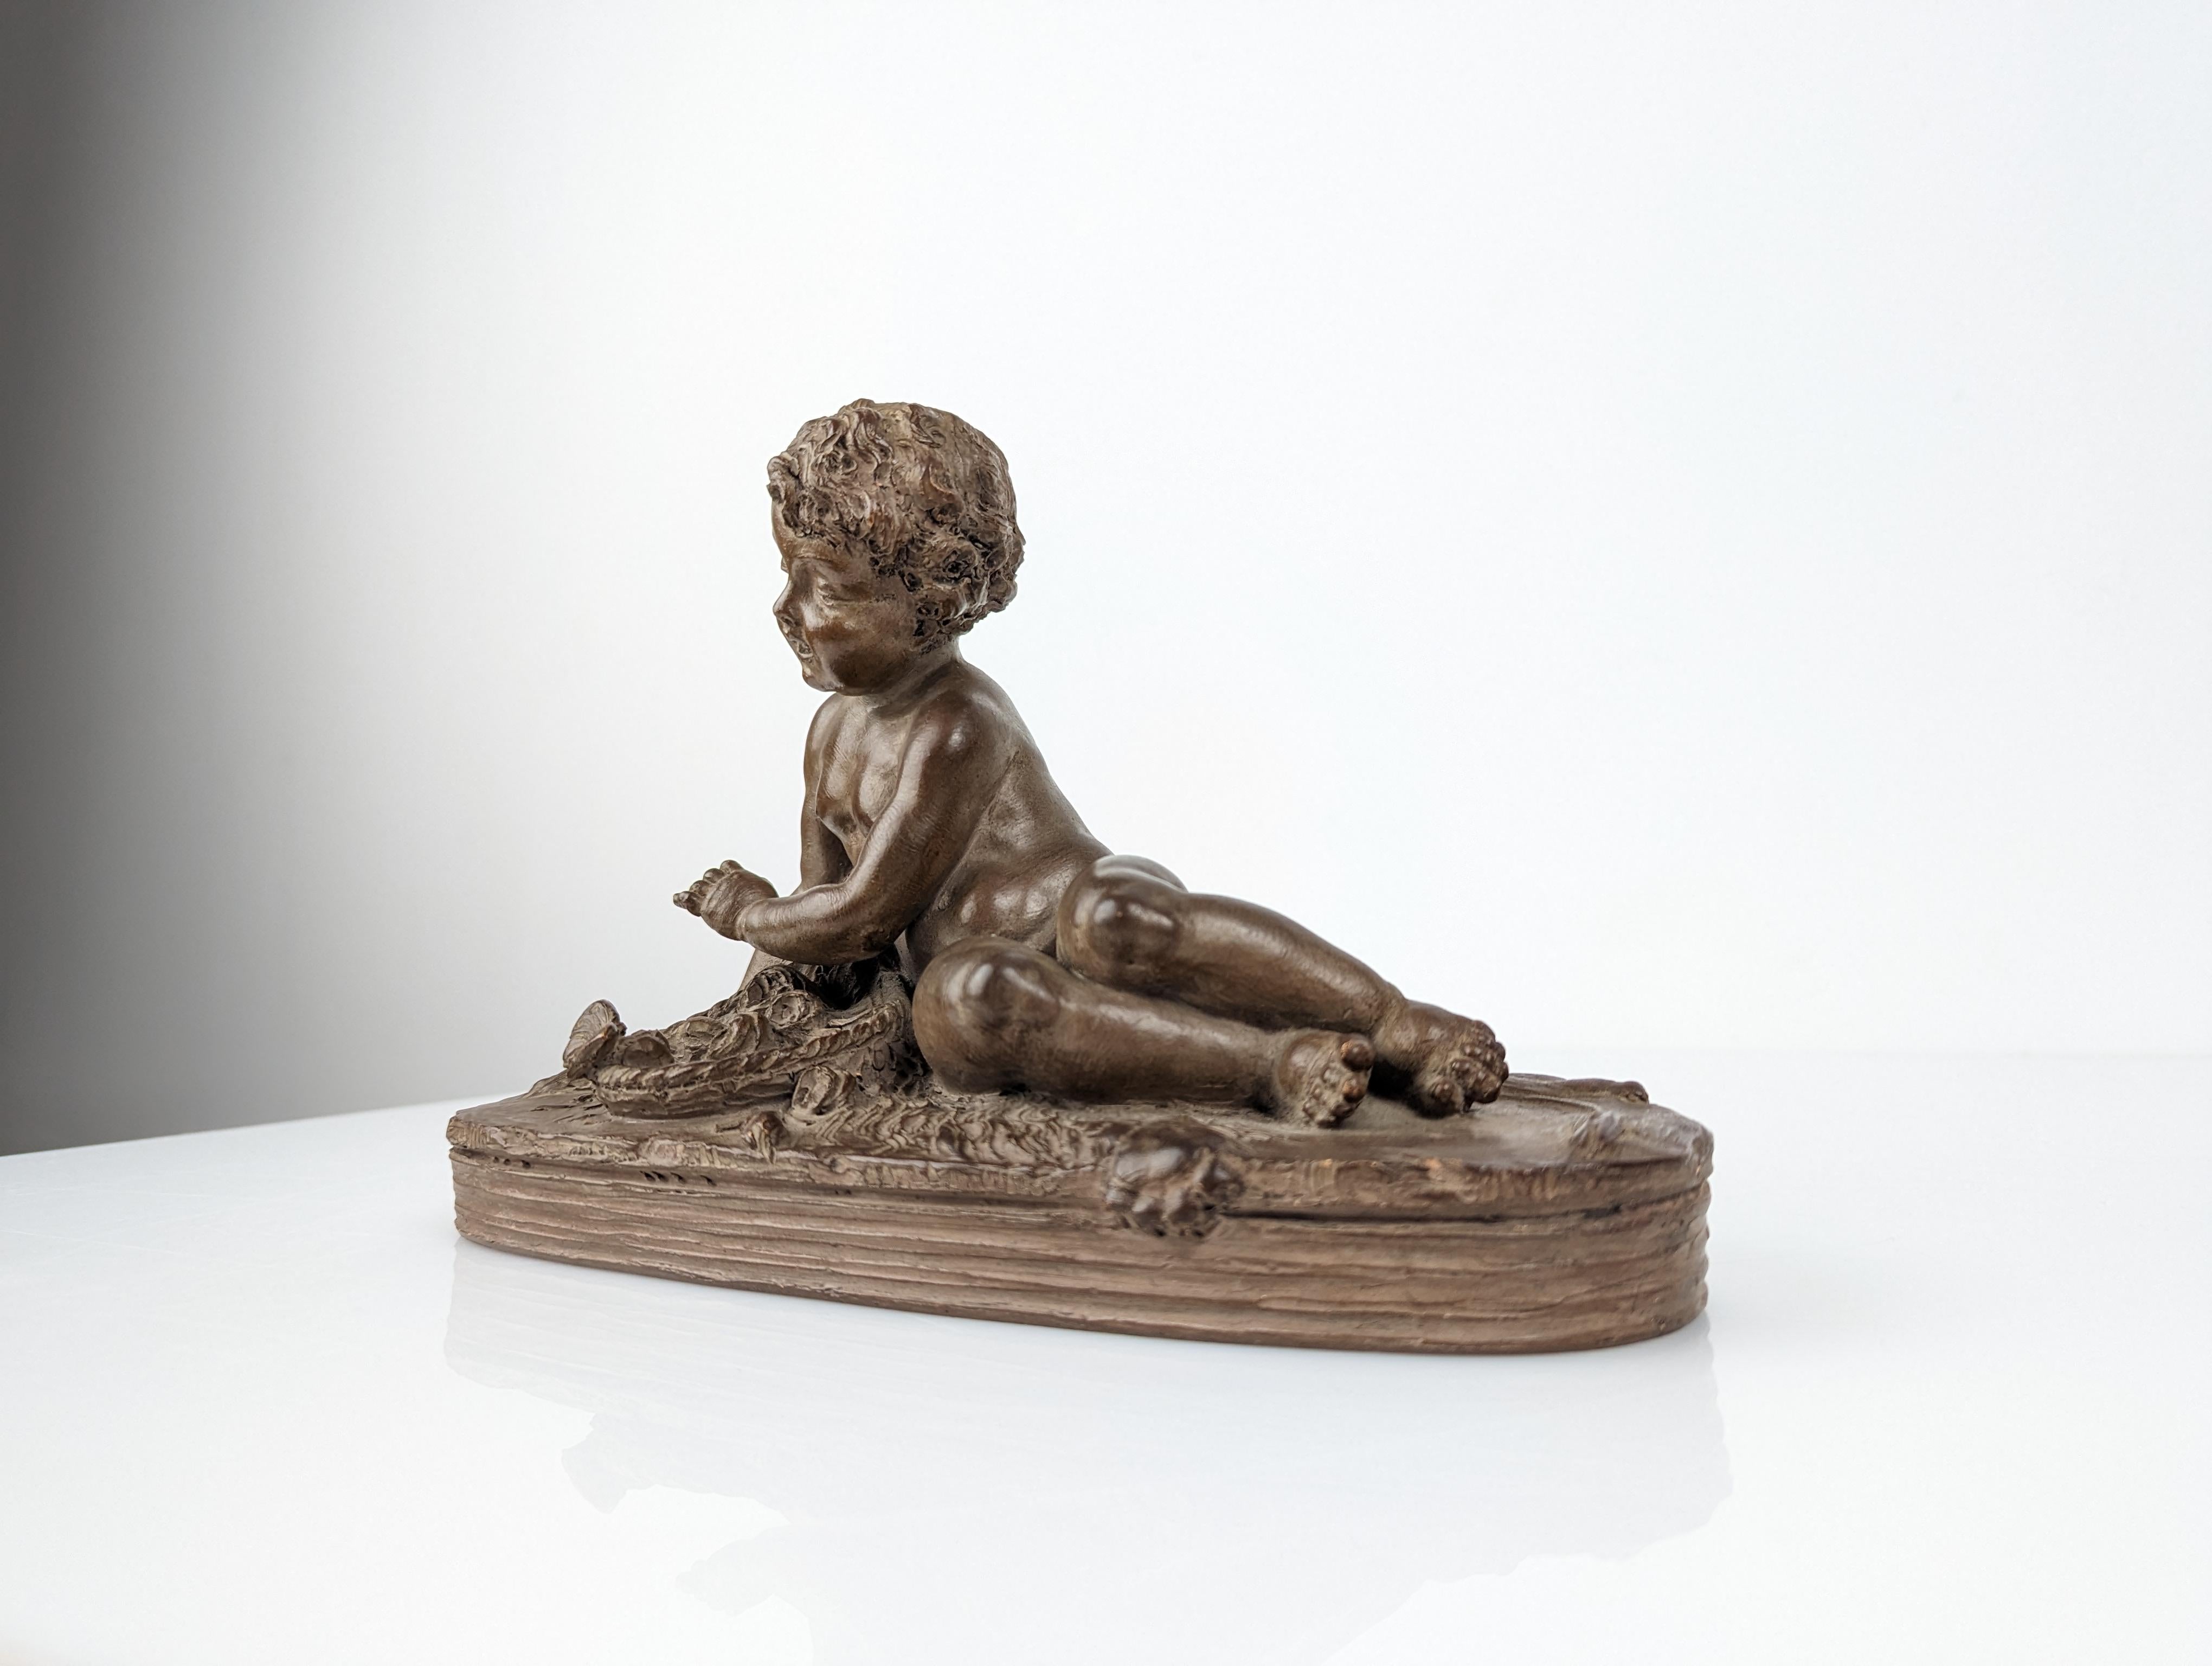 Sculpture magistrale de l'artiste français Renè Rod réalisée en terre cuite à la fin du XIXe siècle, nous montrant sublimement Hercule enfant, couché sur une peau de lion représentant la force. Devant lui, une corbeille avec des fleurs faisant